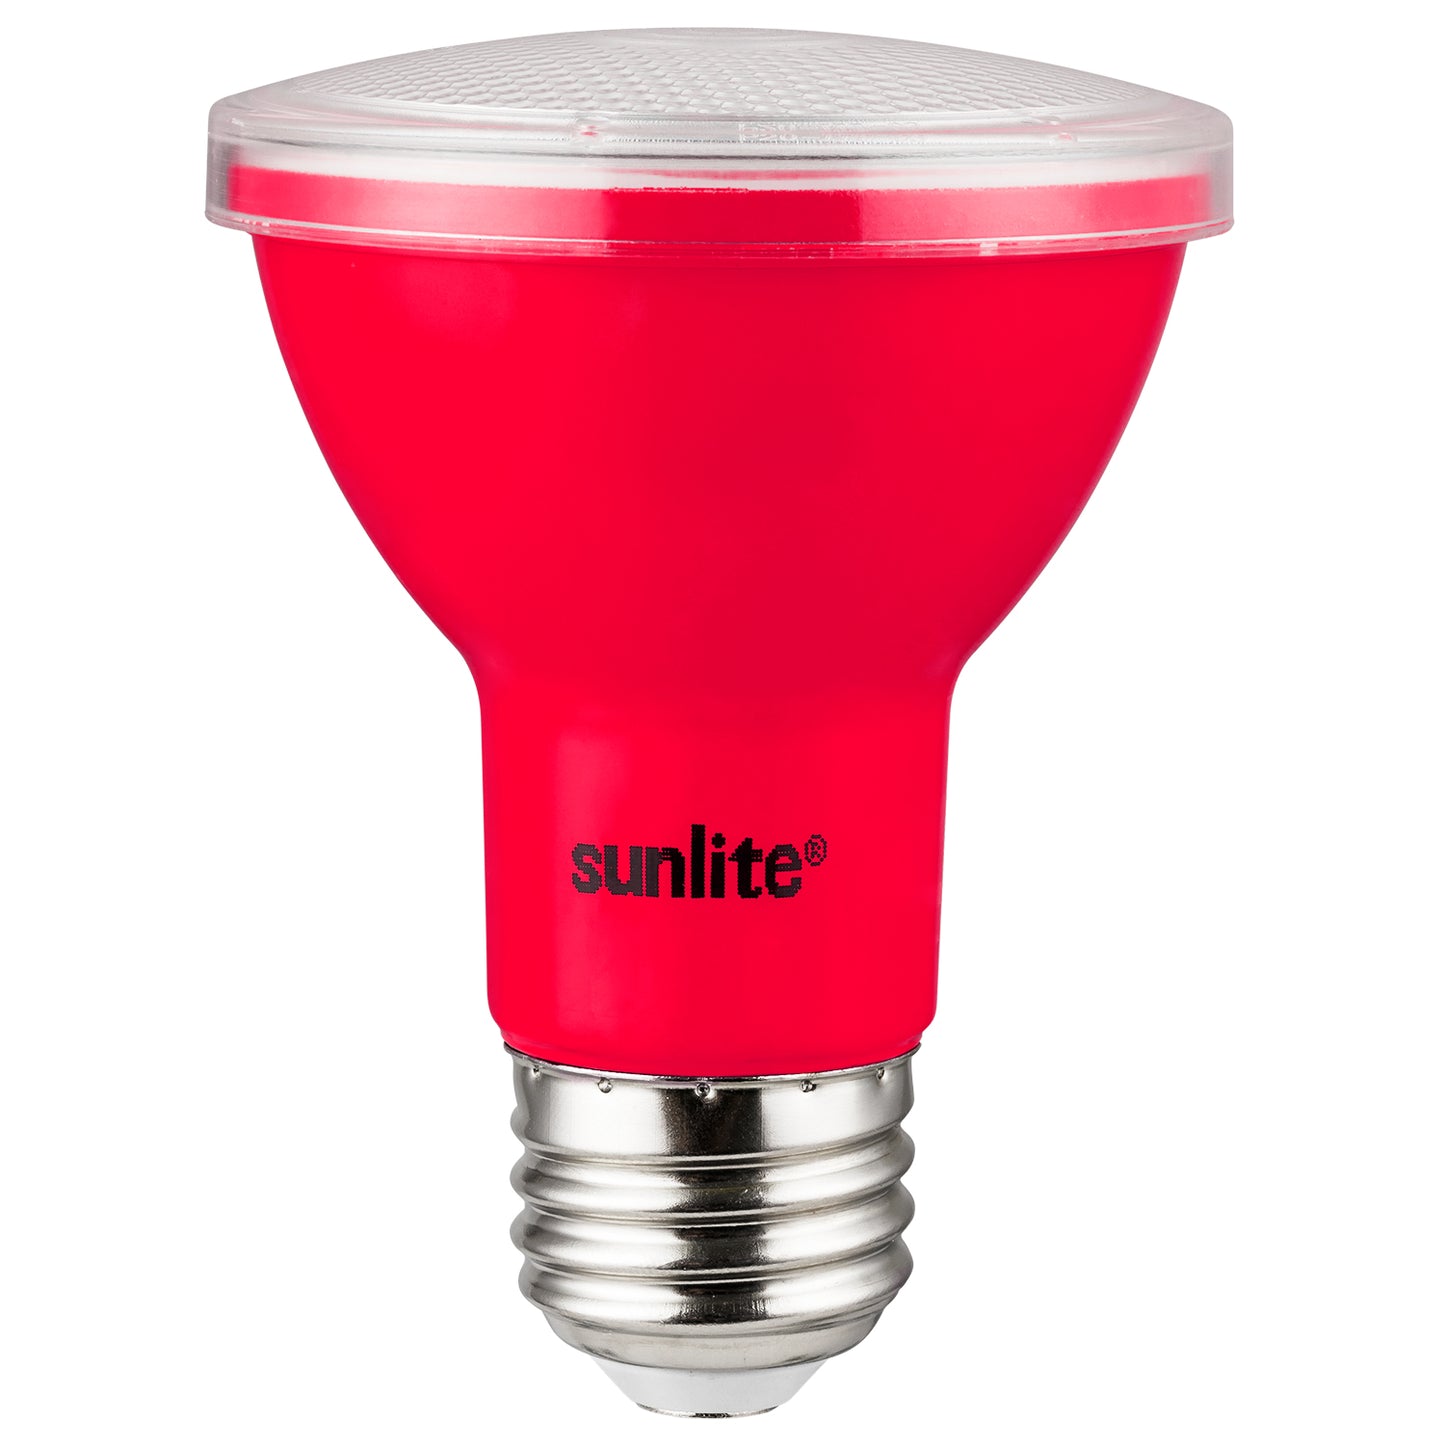 Sunlite 81465 LED PAR20 Colored Recessed Light Bulb, 3 Watt (50w Equivalent), Medium (E26) Base, Floodlight, ETL Listed, Red, 1 pack